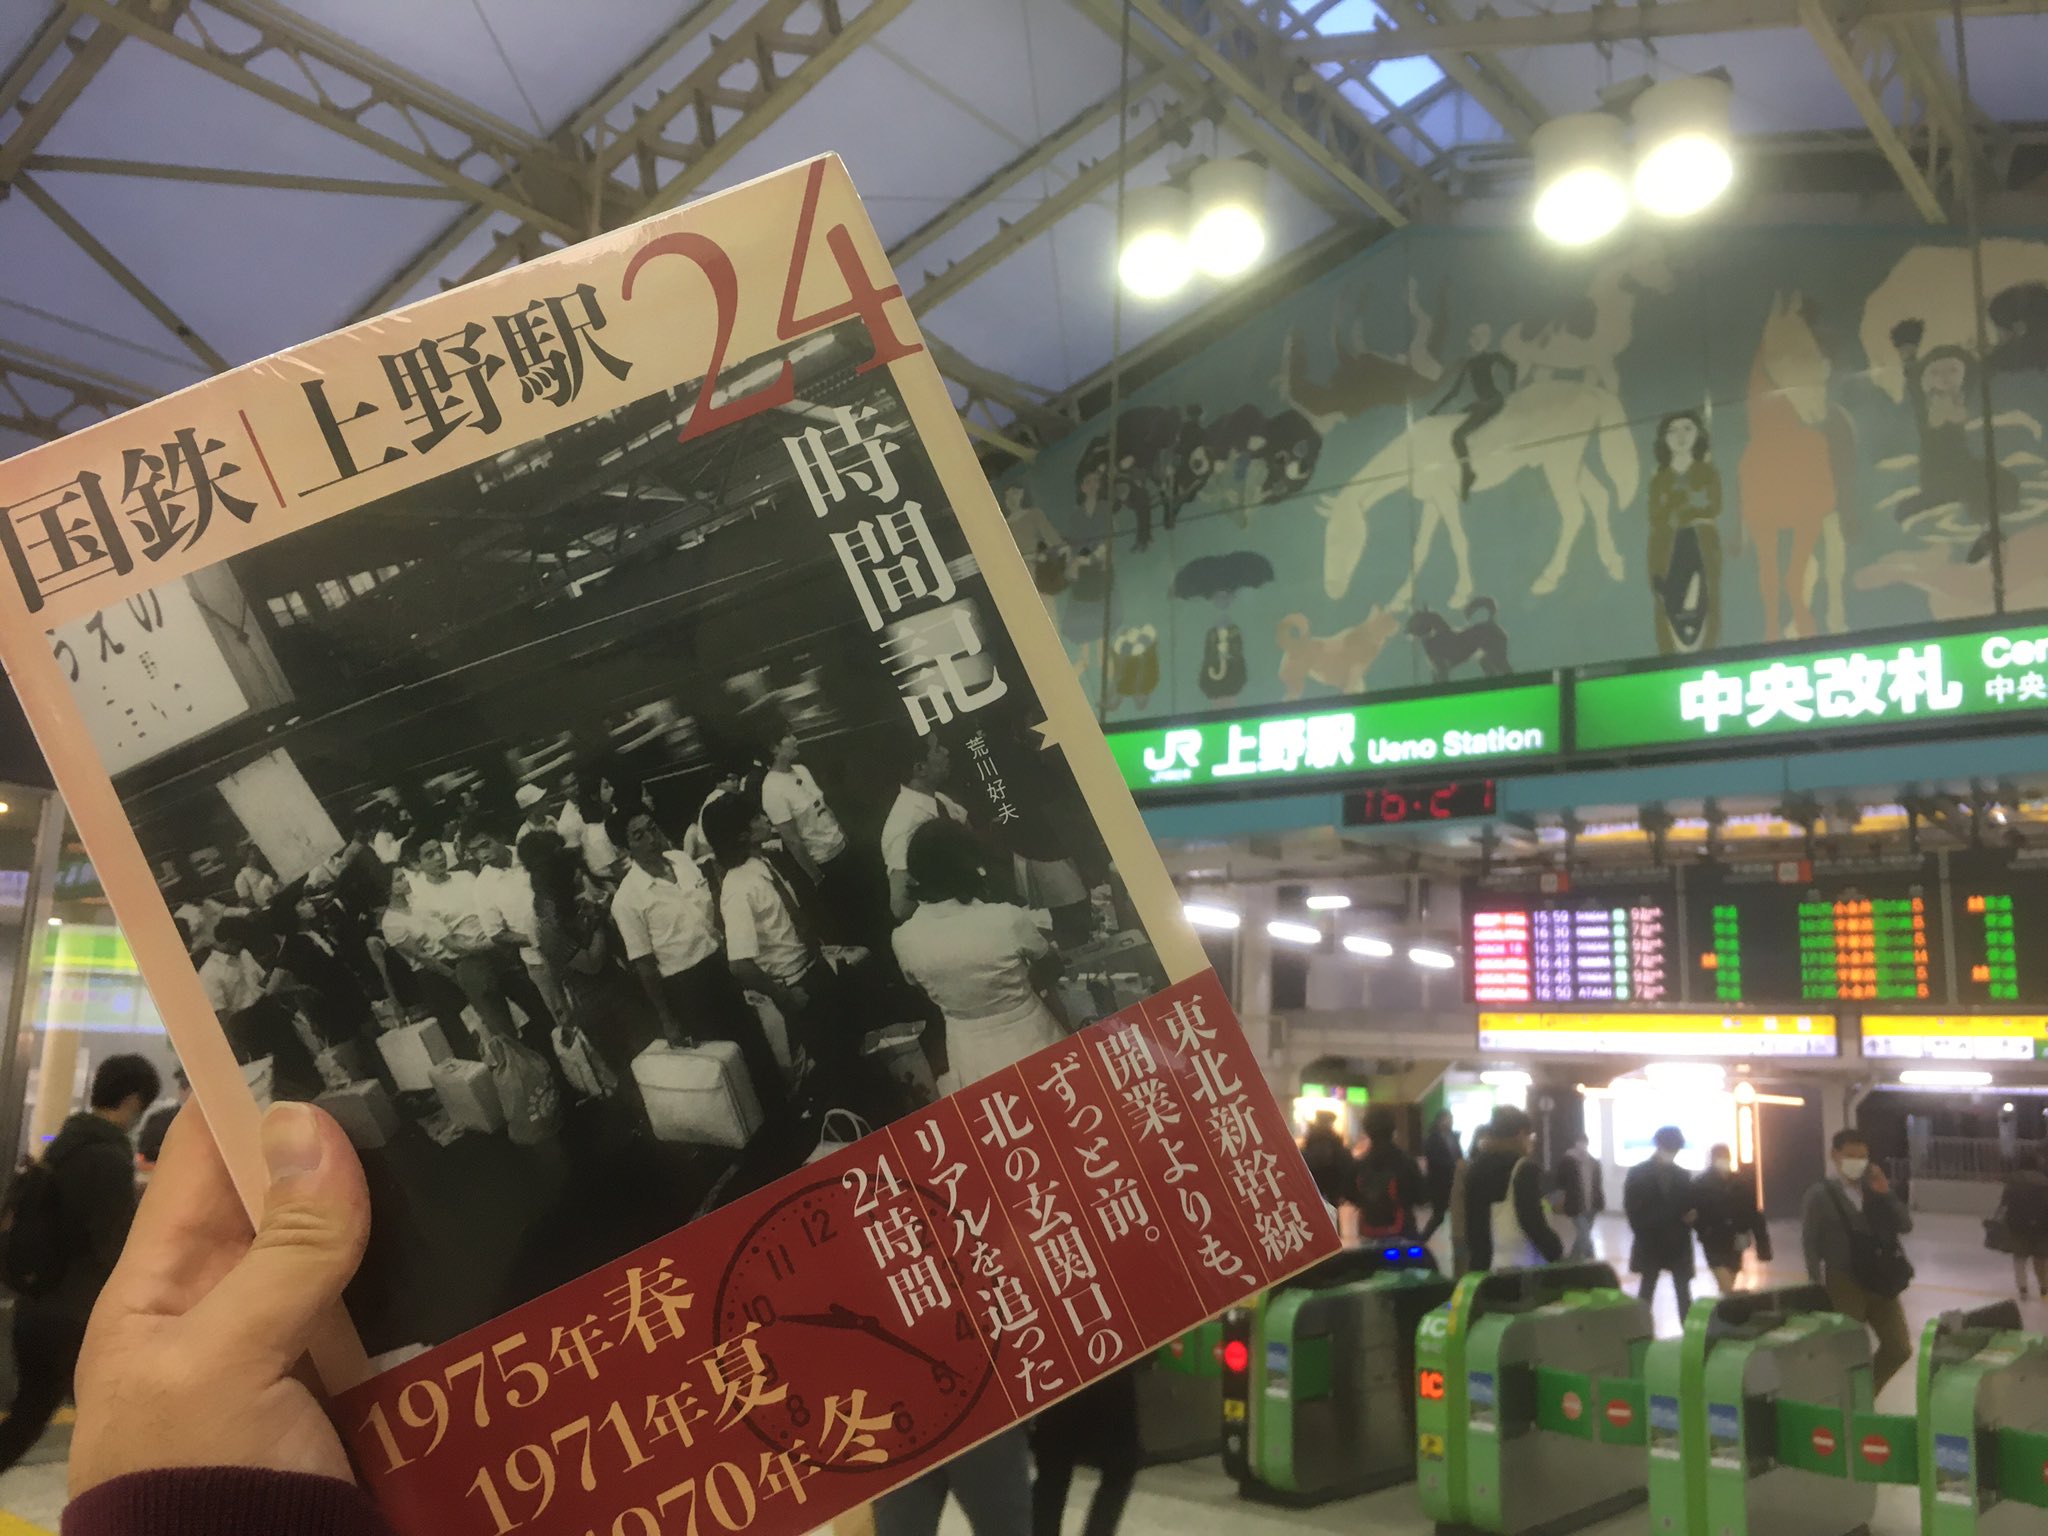 カイル 荒川先生の新刊 国鉄上野駅24時間記 を上野駅アトレ内の書店で買いました T Co 8uhehc5jc8 Twitter